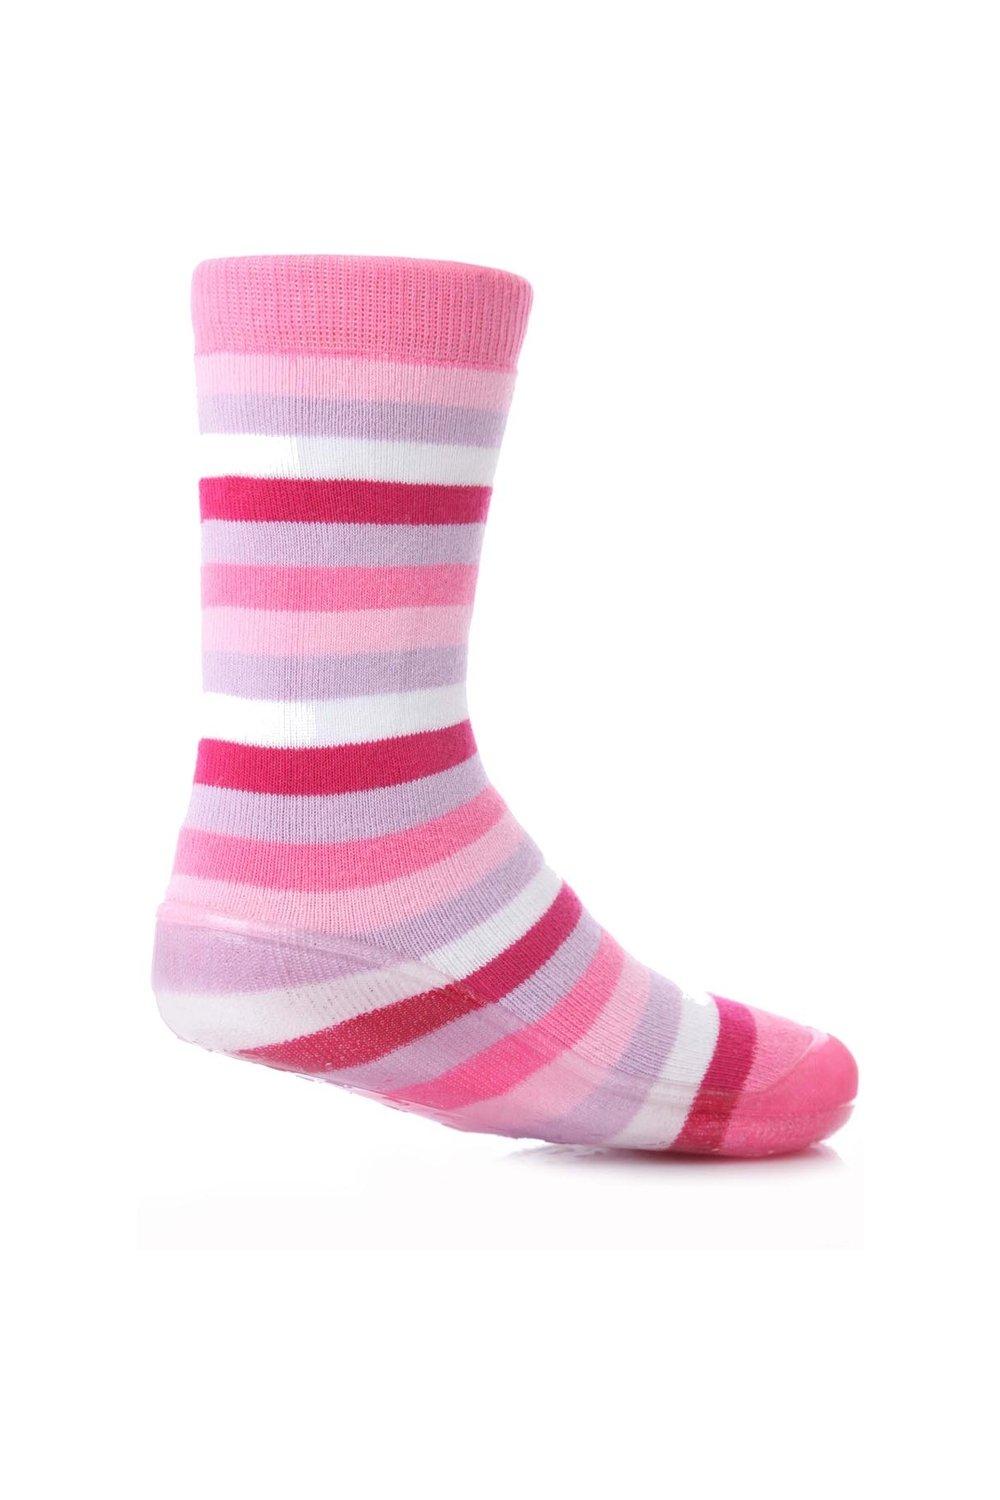 1 пара полосатых носков-тапочек Gripper со скидкой 25% на этот стиль SOCKSHOP, розовый 1 пара полосатых носков тапочек gripper со скидкой 25% на этот стиль sockshop синий